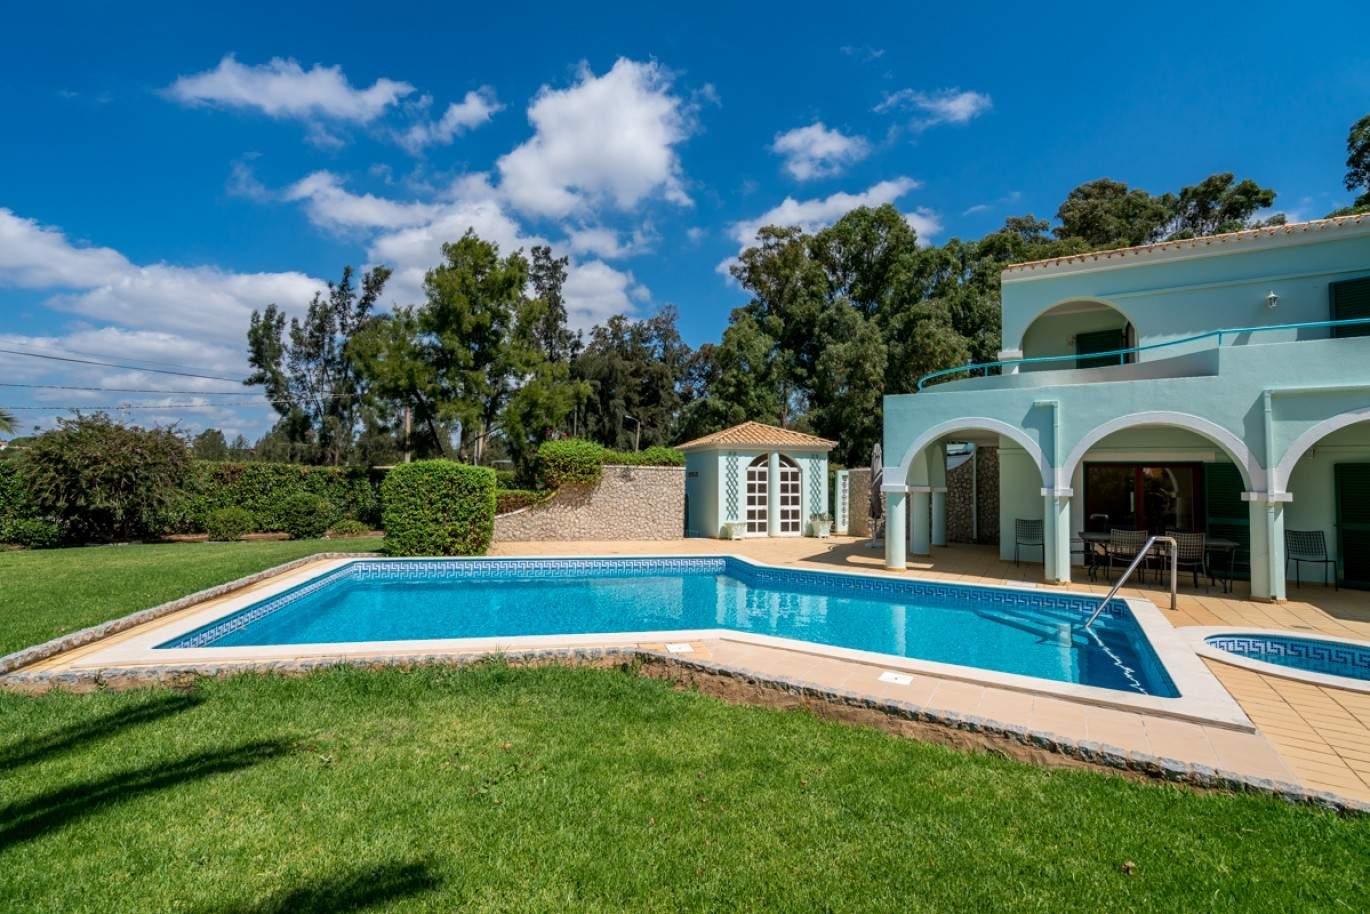 Venda de moradia com piscina na Penina, Alvor, Algarve, Portugal_83421